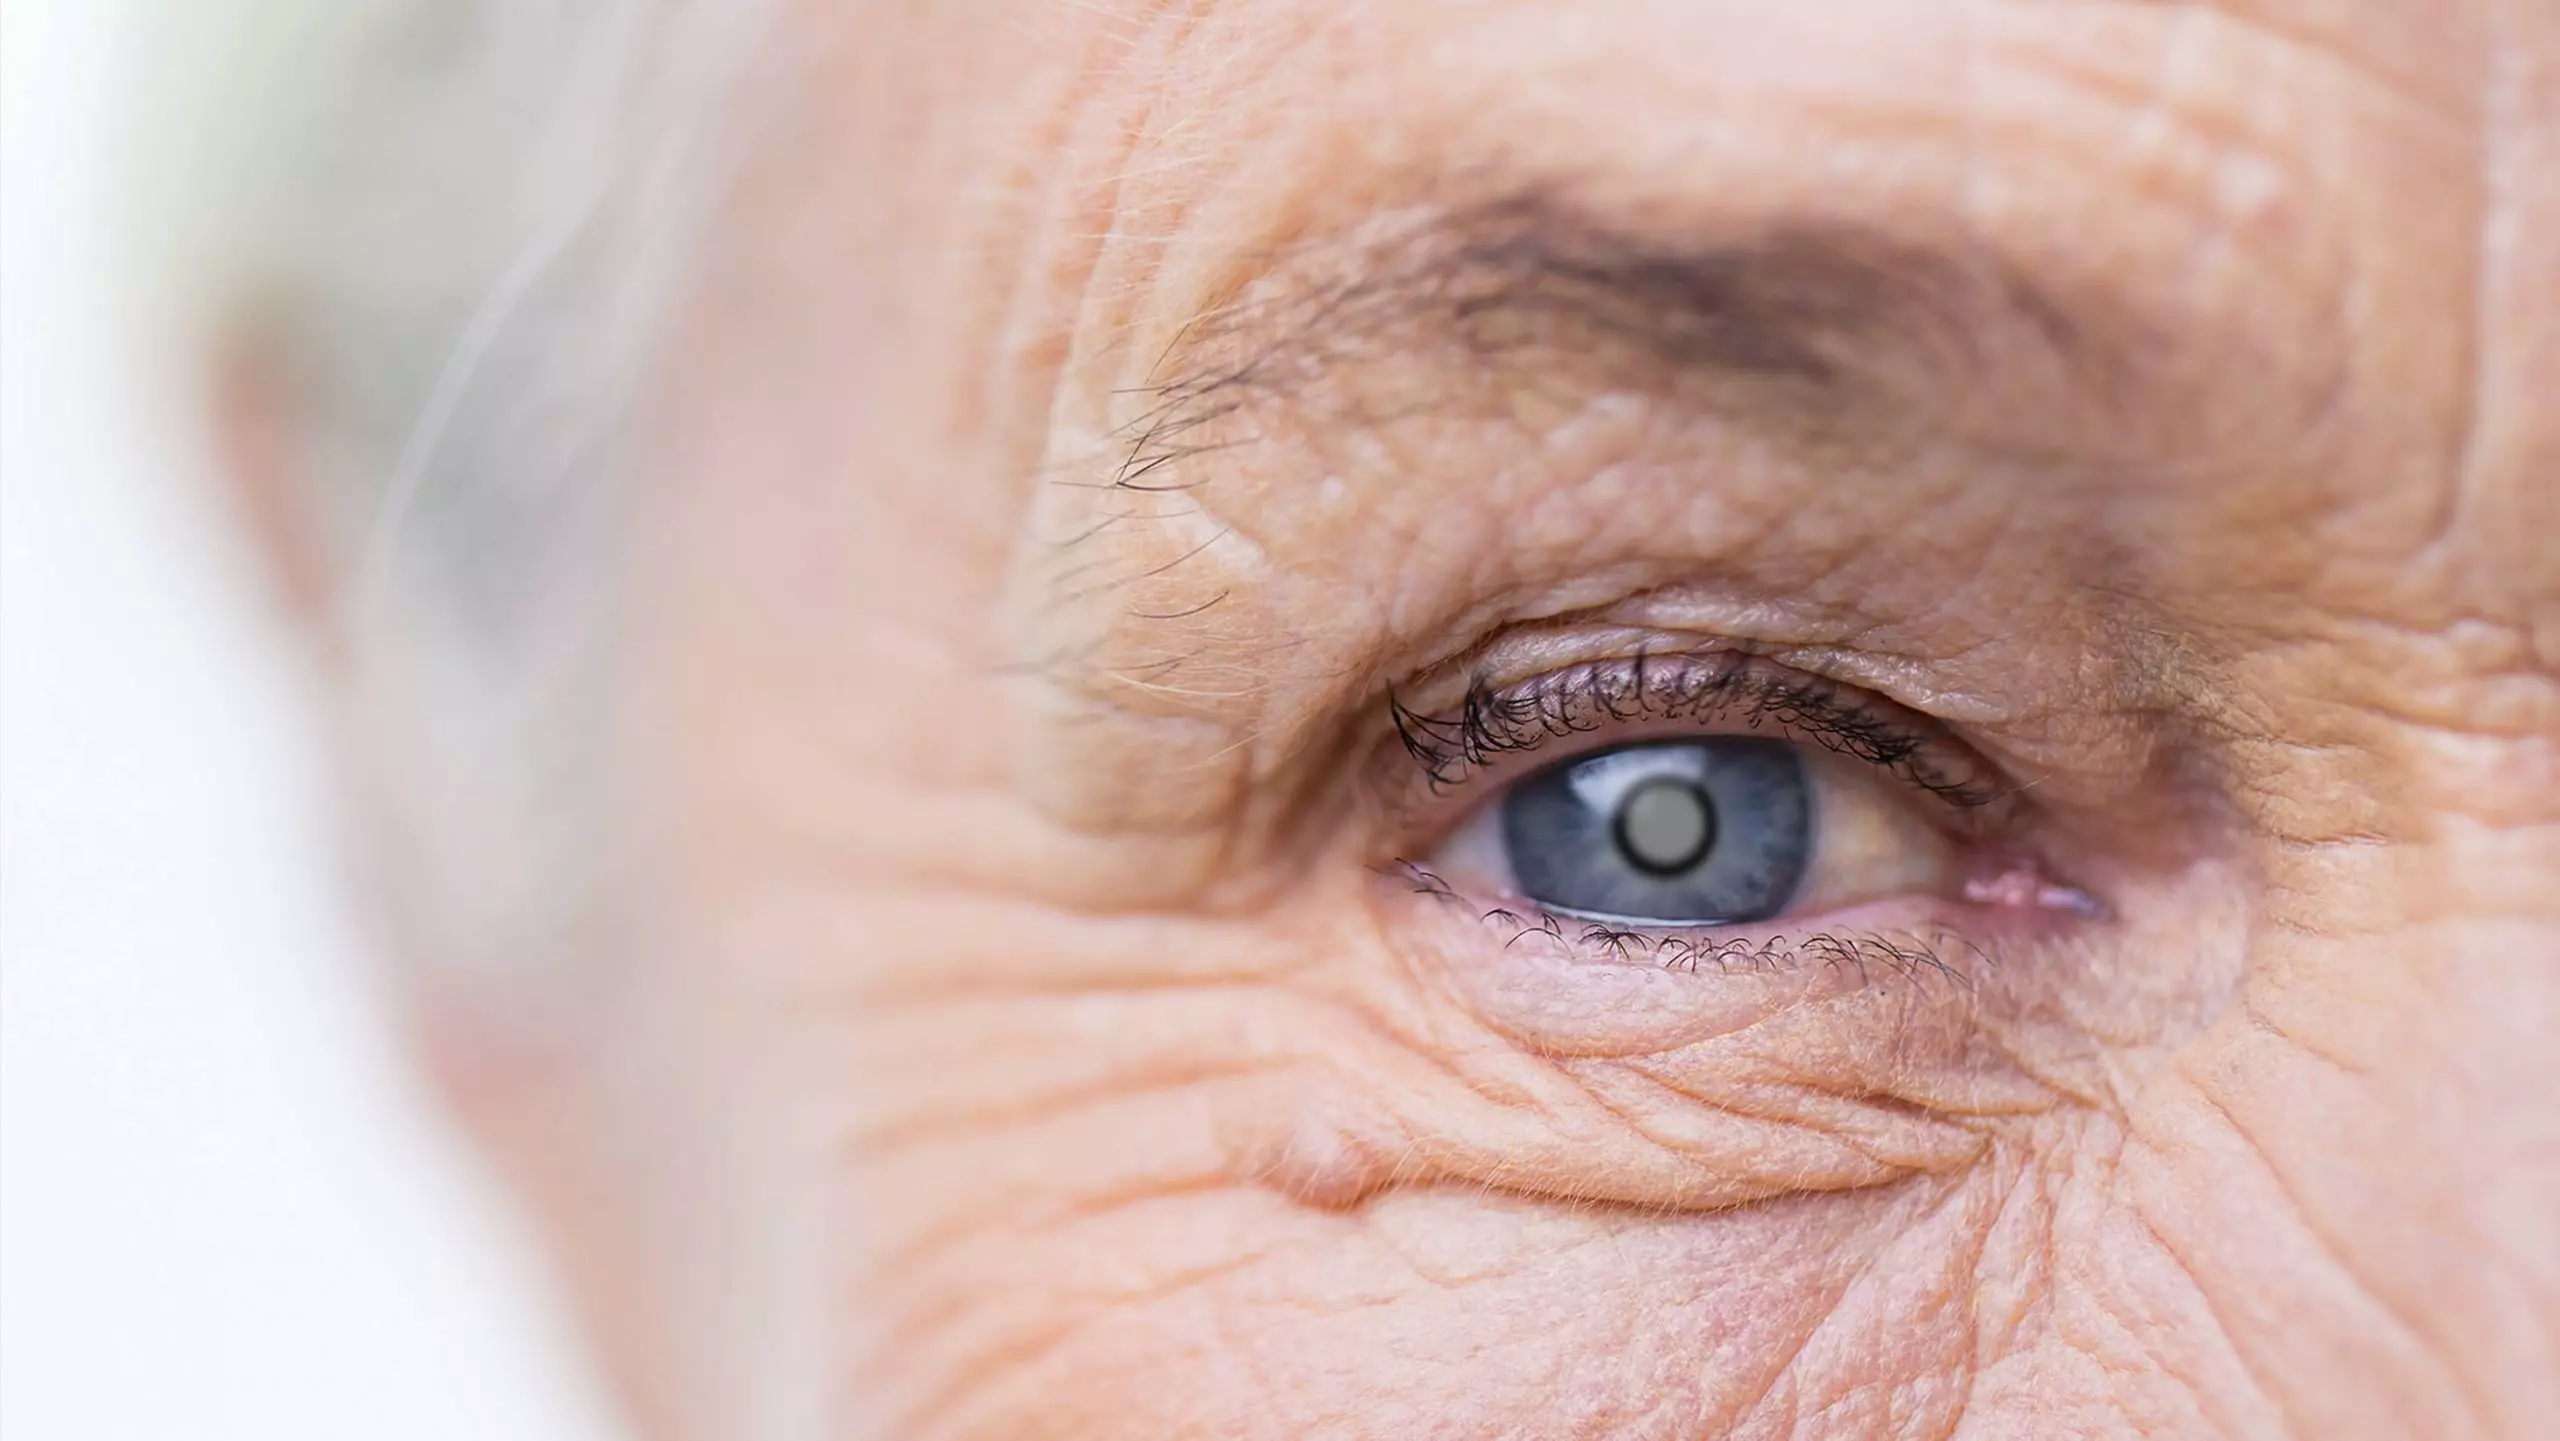 Grüner Star (Glaukom): Unbehandelt kann das Auge erblinden - OrCam